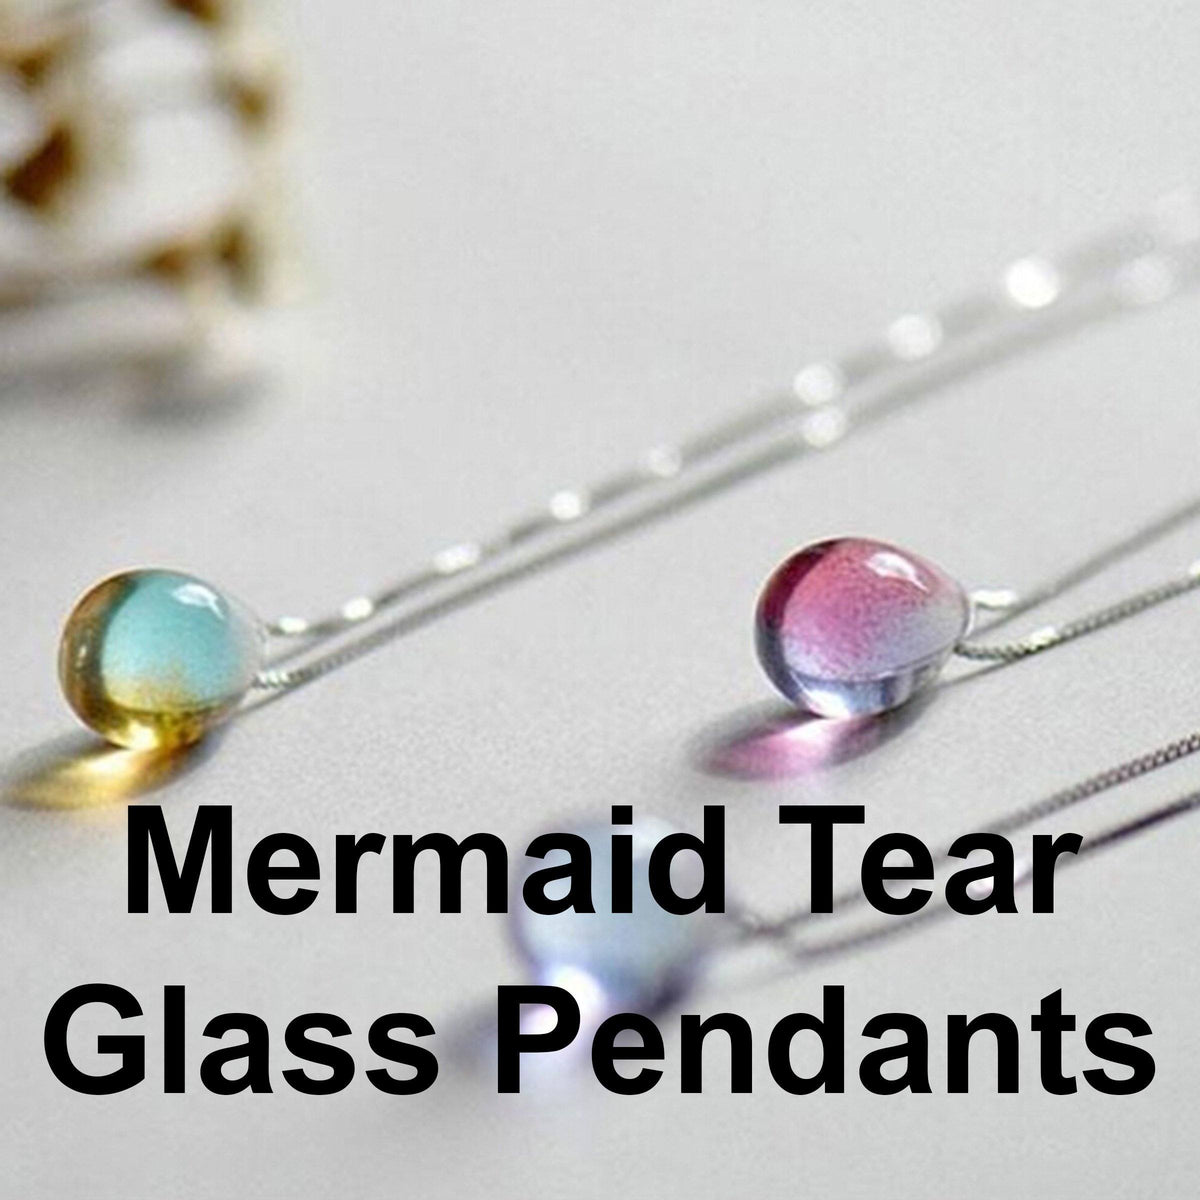 Mermaid Tear Glass Pendants Luke Adams Glass Blowing Studio 